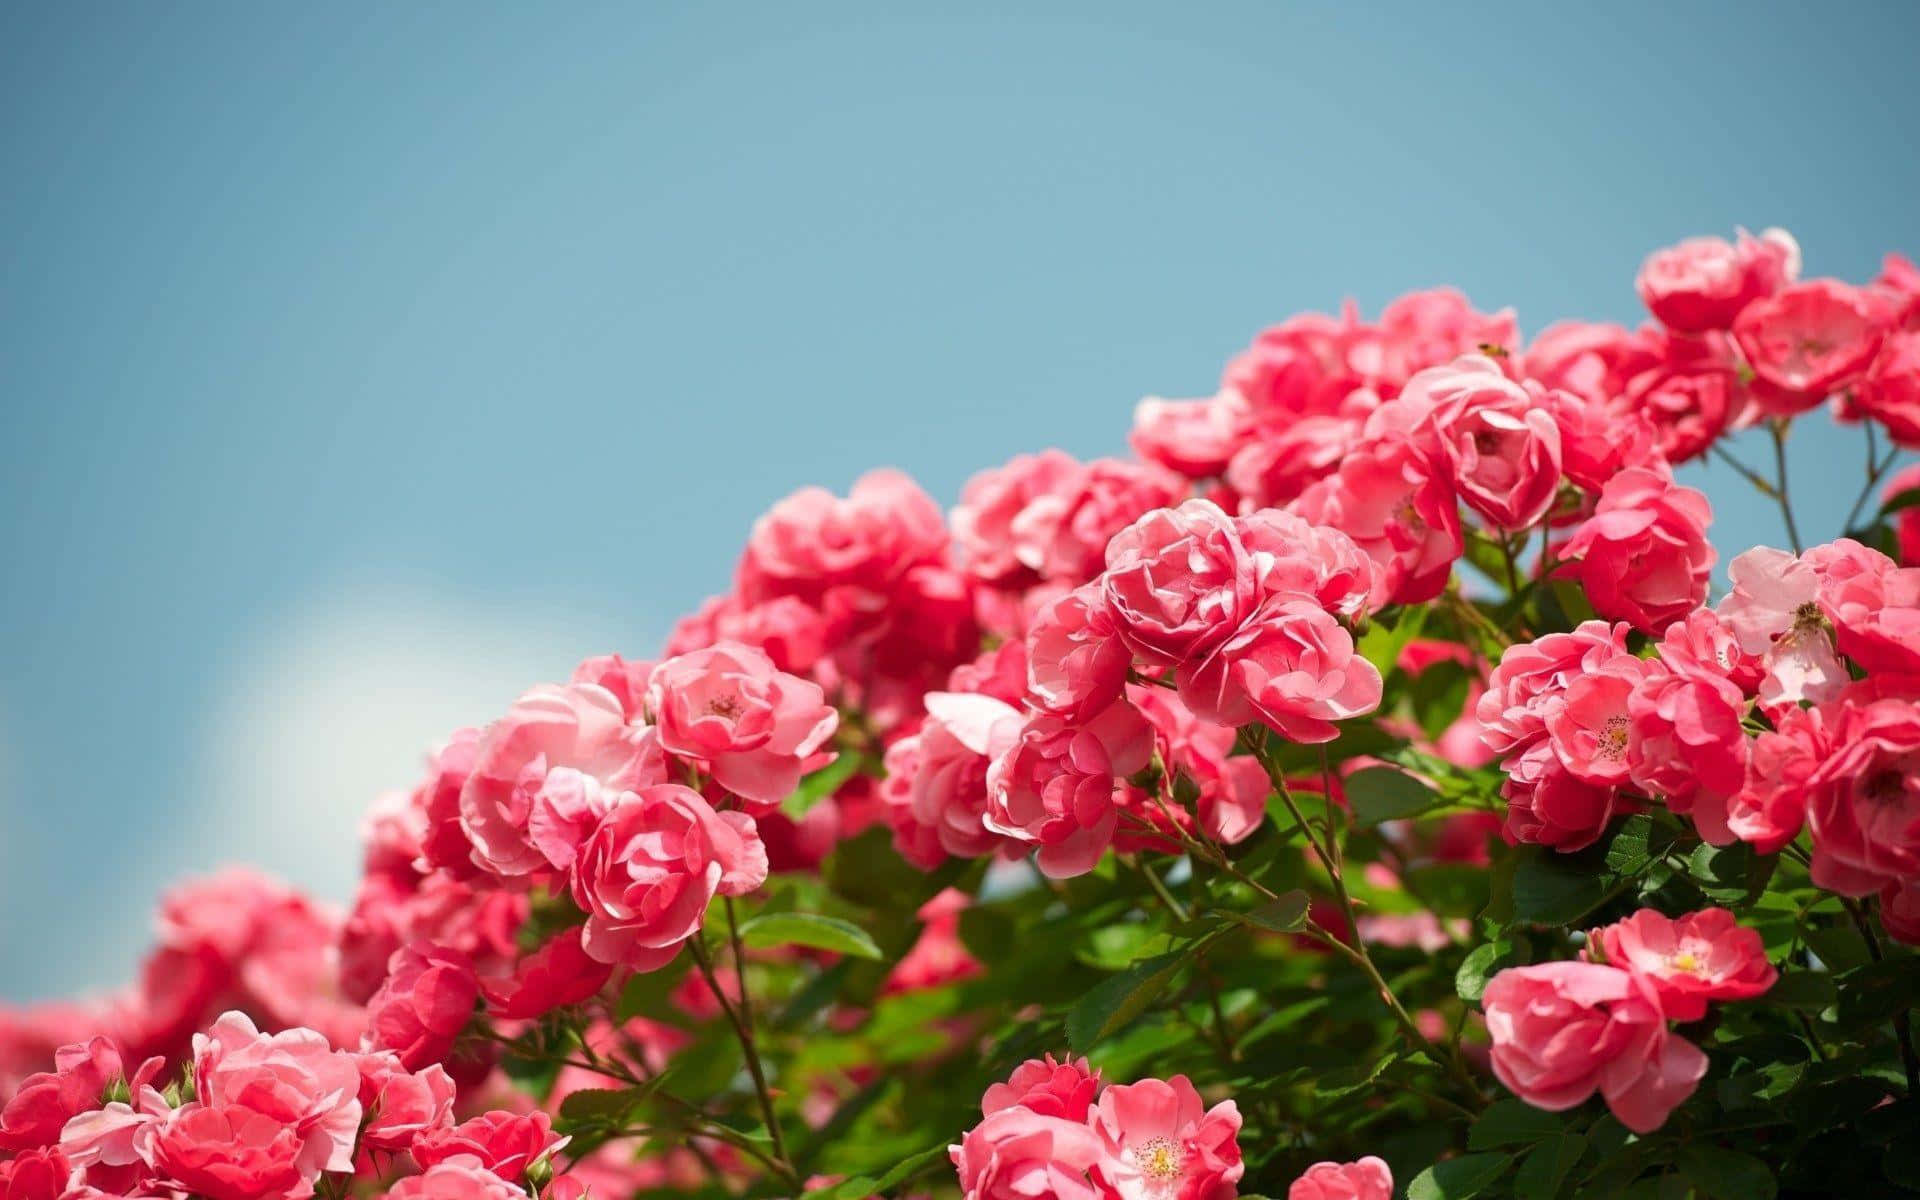 Khám phá những hình ảnh hoa hồng vườn miễn phí tuyệt đẹp để tăng thêm sự thư giãn và cảm nhận những nét đẹp hoang sơ của thiên nhiên. Các bức hình sẽ khiến bạn cảm thấy mình như đang lang thang trong một vườn hoa đầy mê hoặc. Hãy nhấp chuột và tận hưởng nhé!